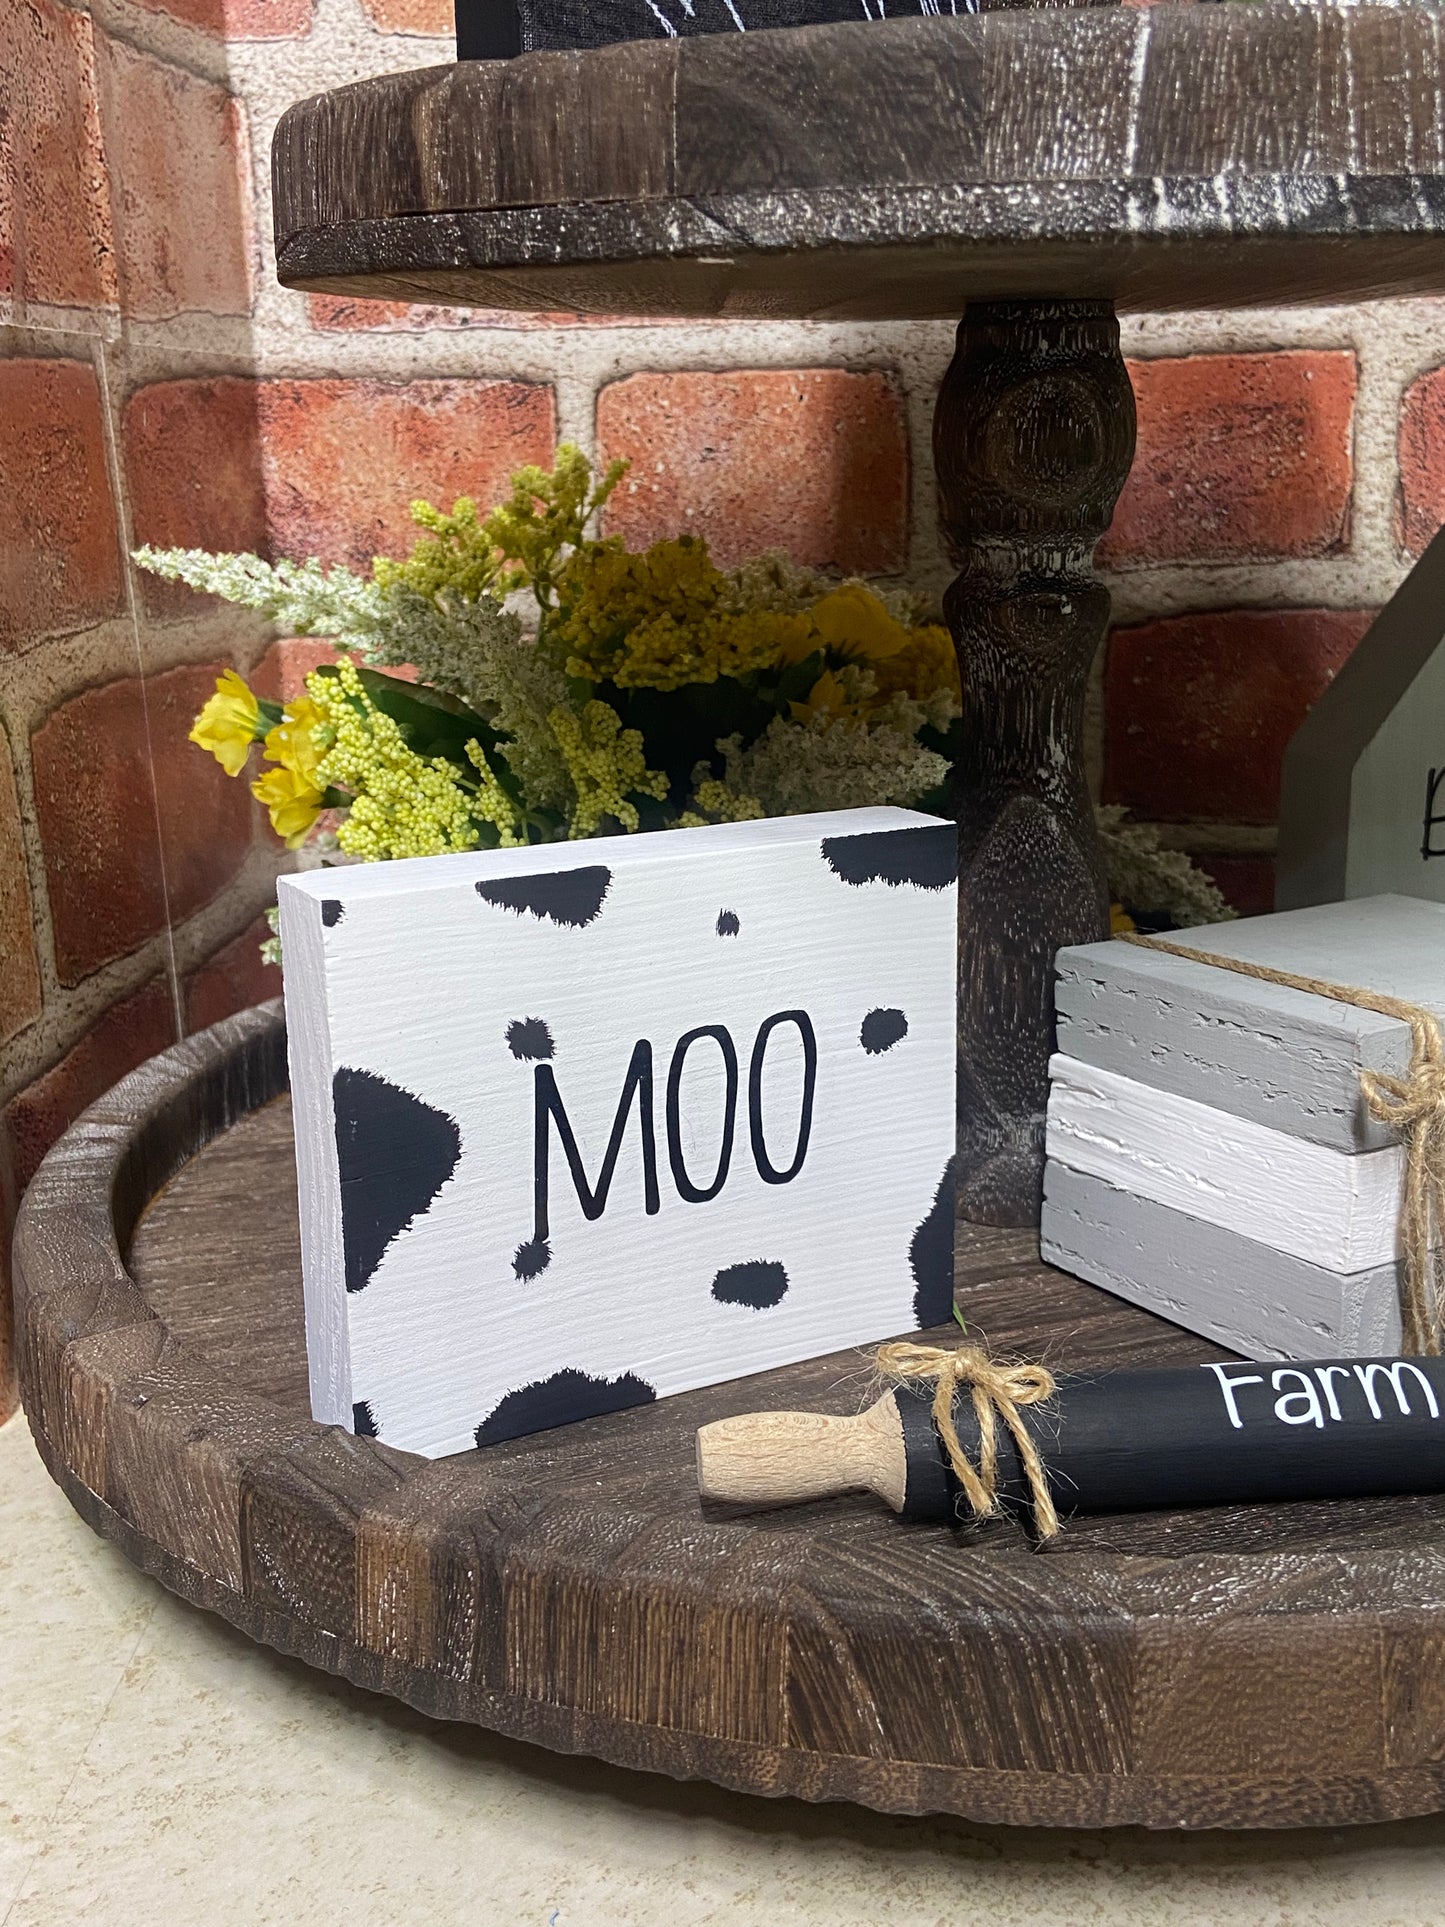 Moo - Farmhouse Sign